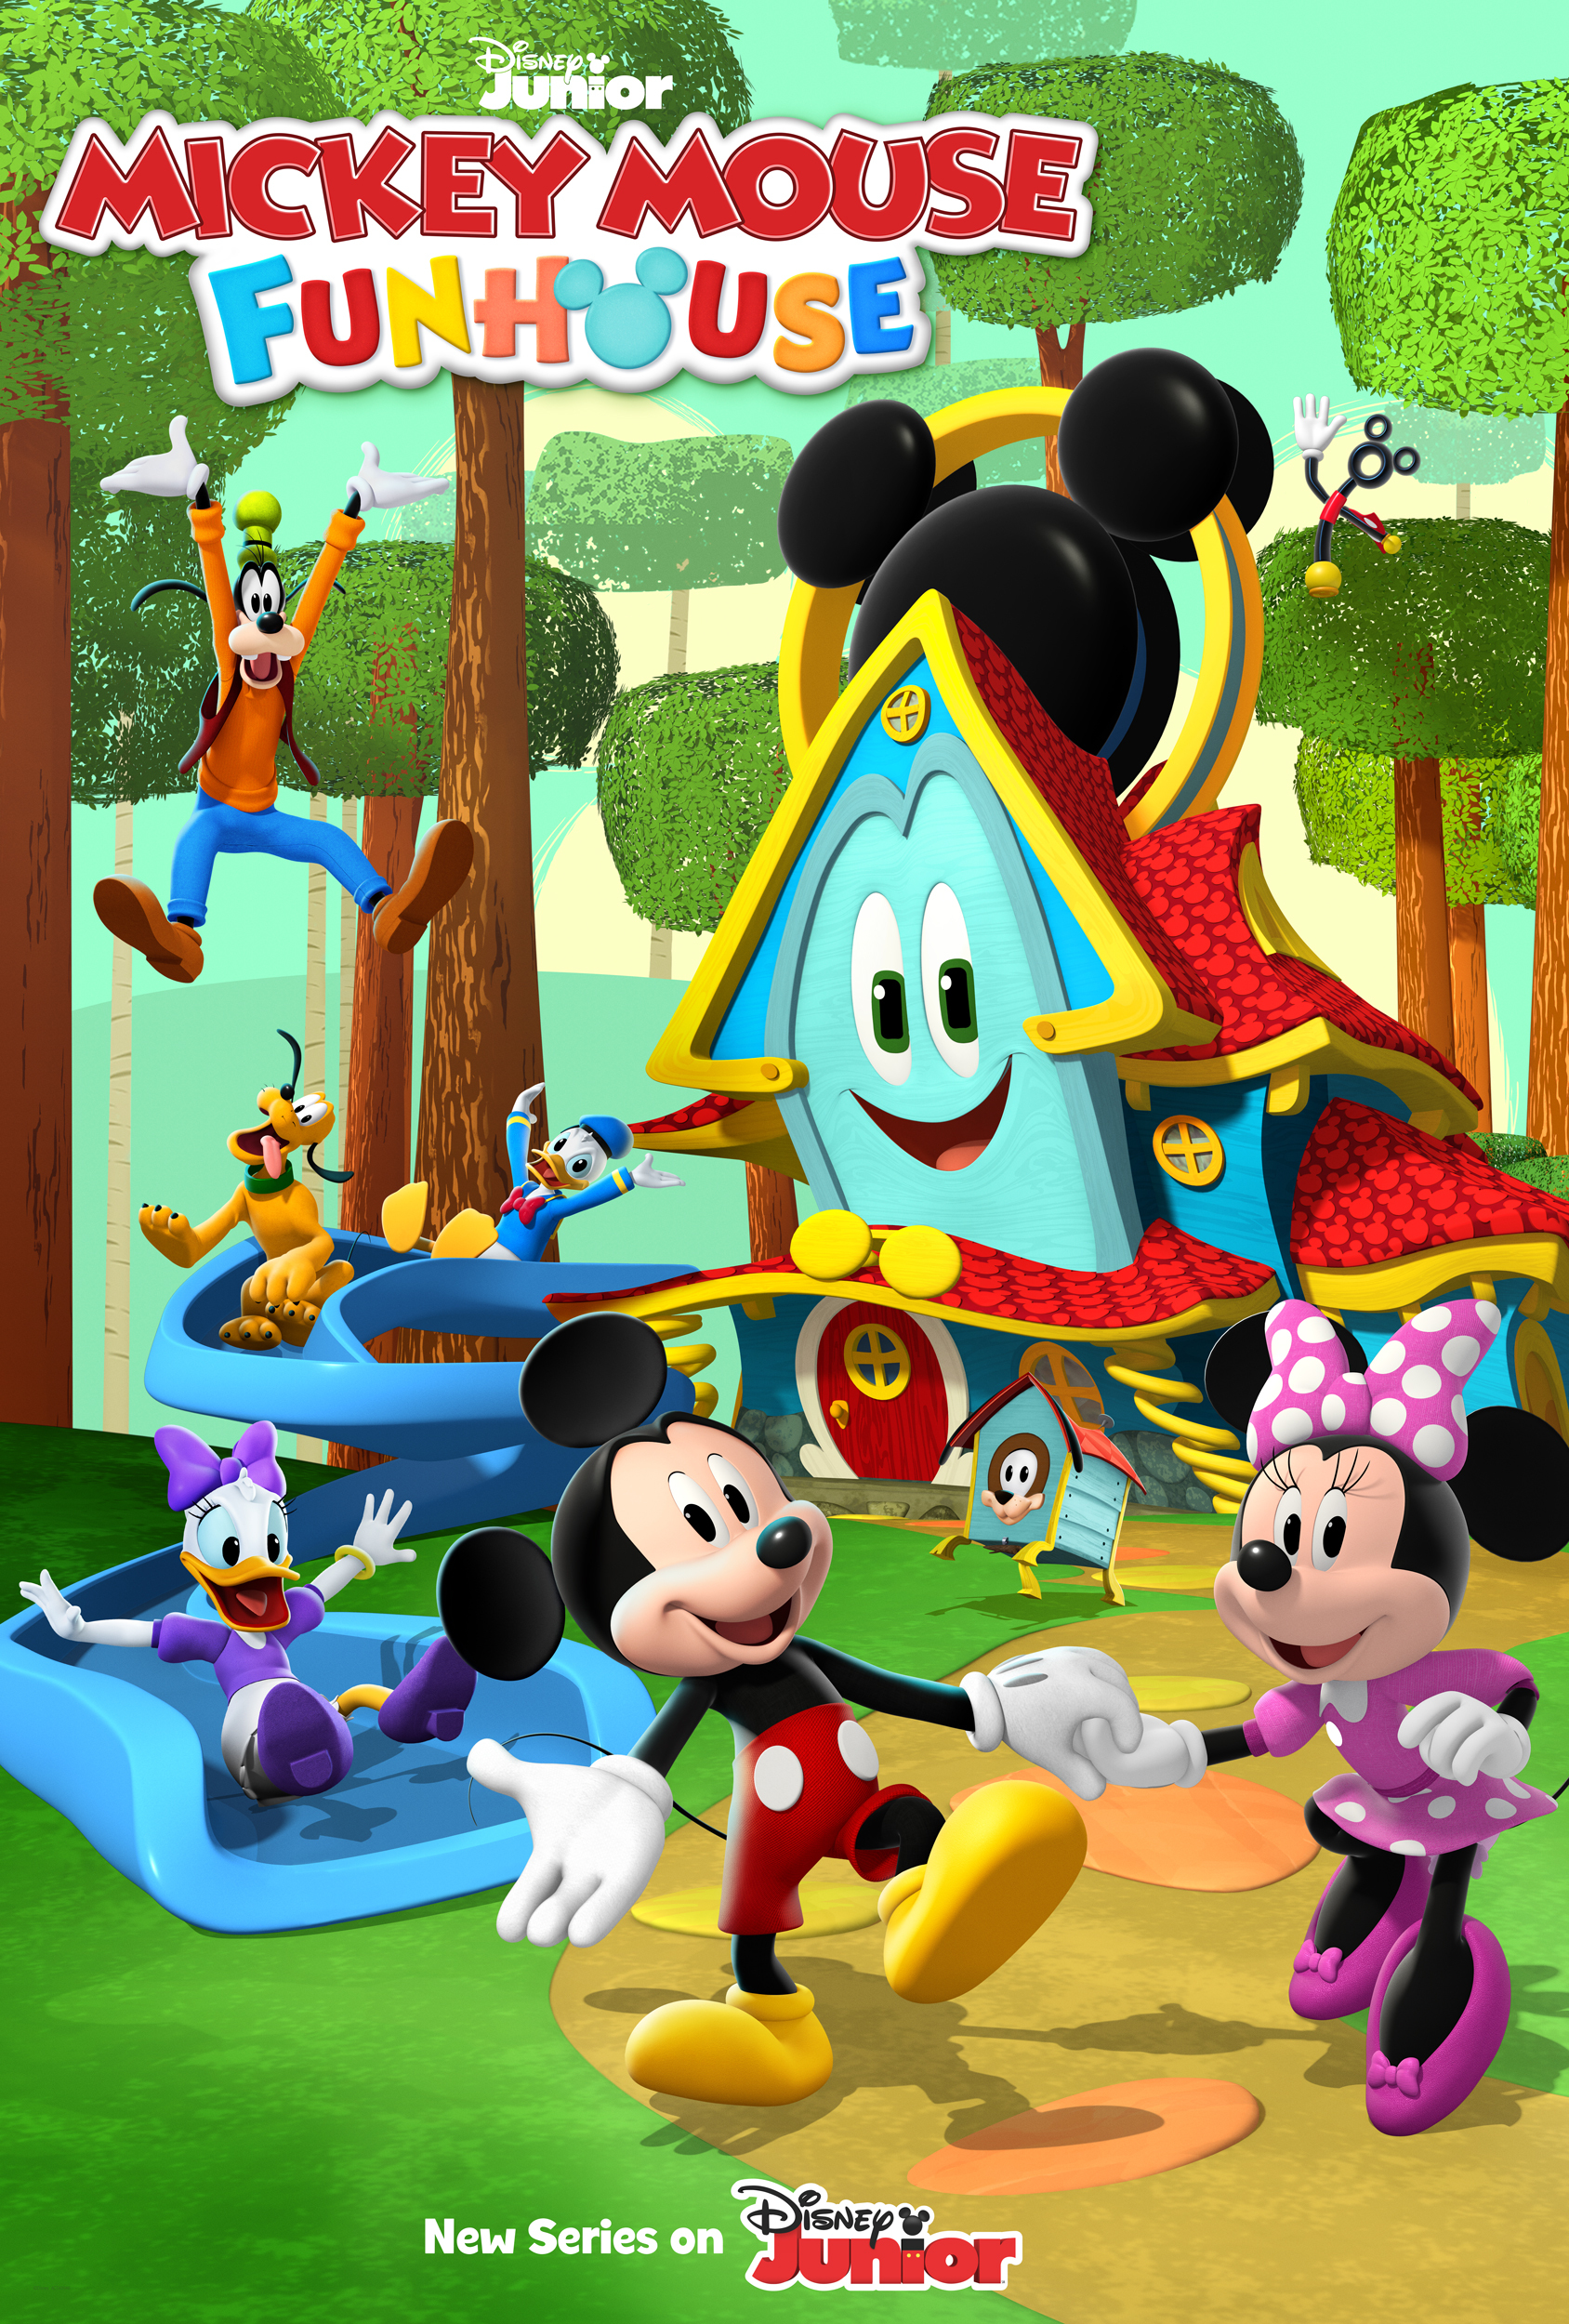 Juguetes de Mickey Mouse, La Casa De Mickey Mouse en Español